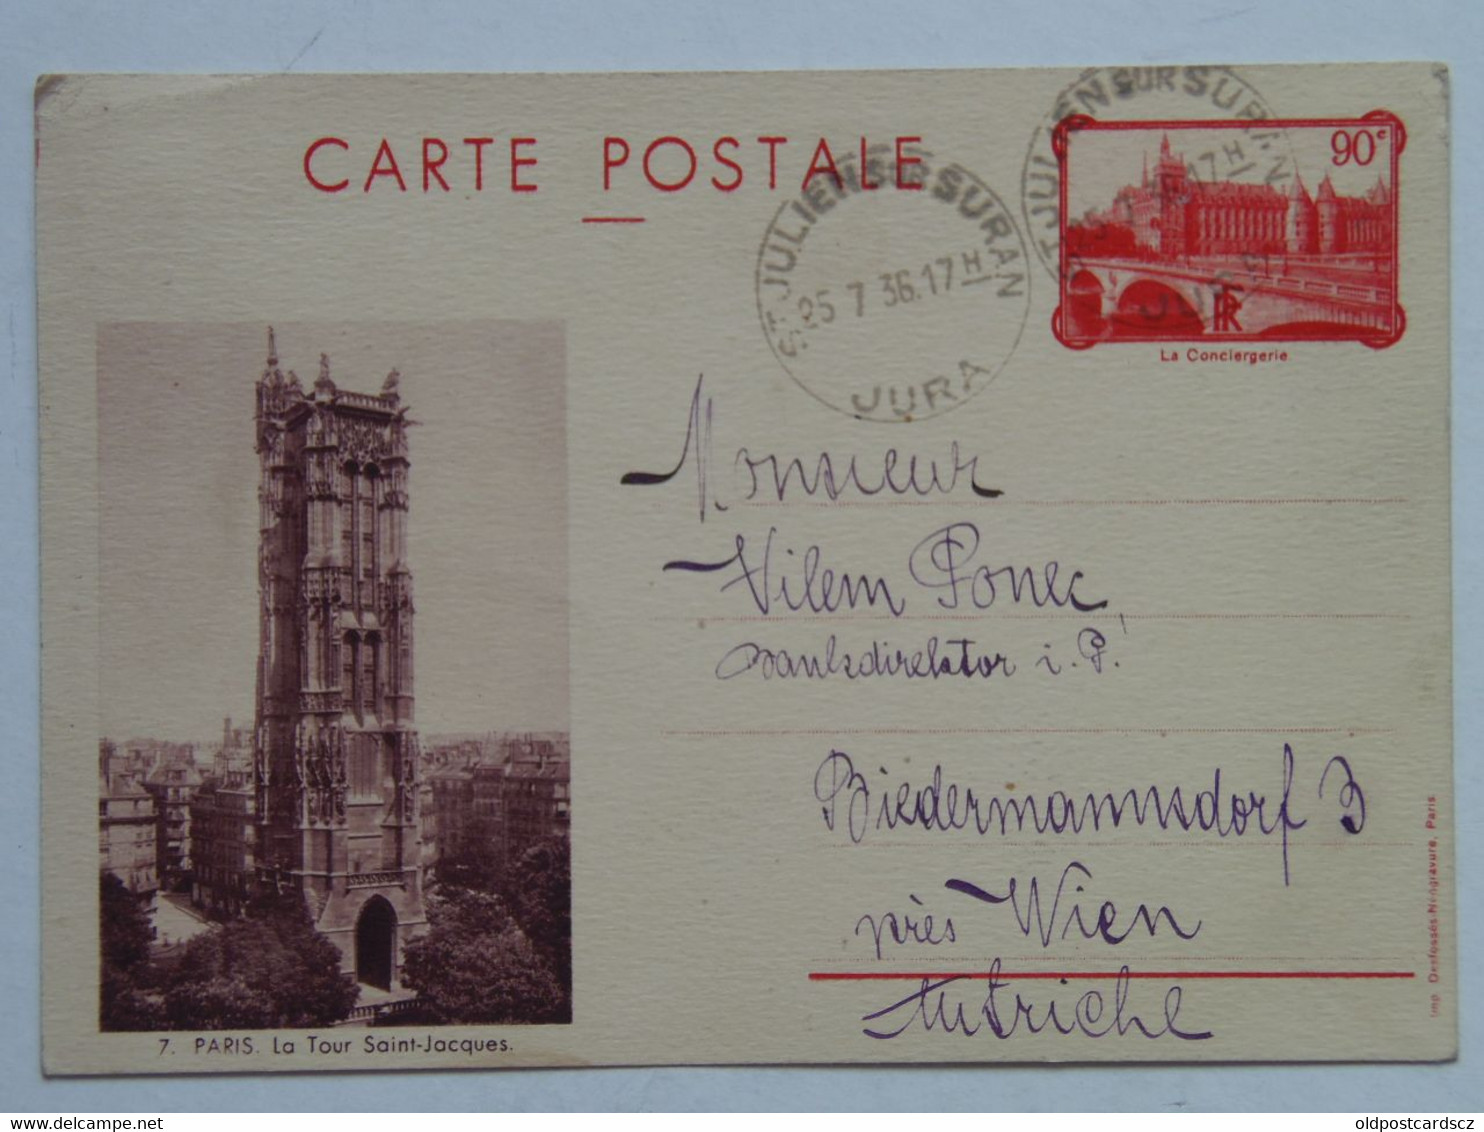 Carte postale x7 1936